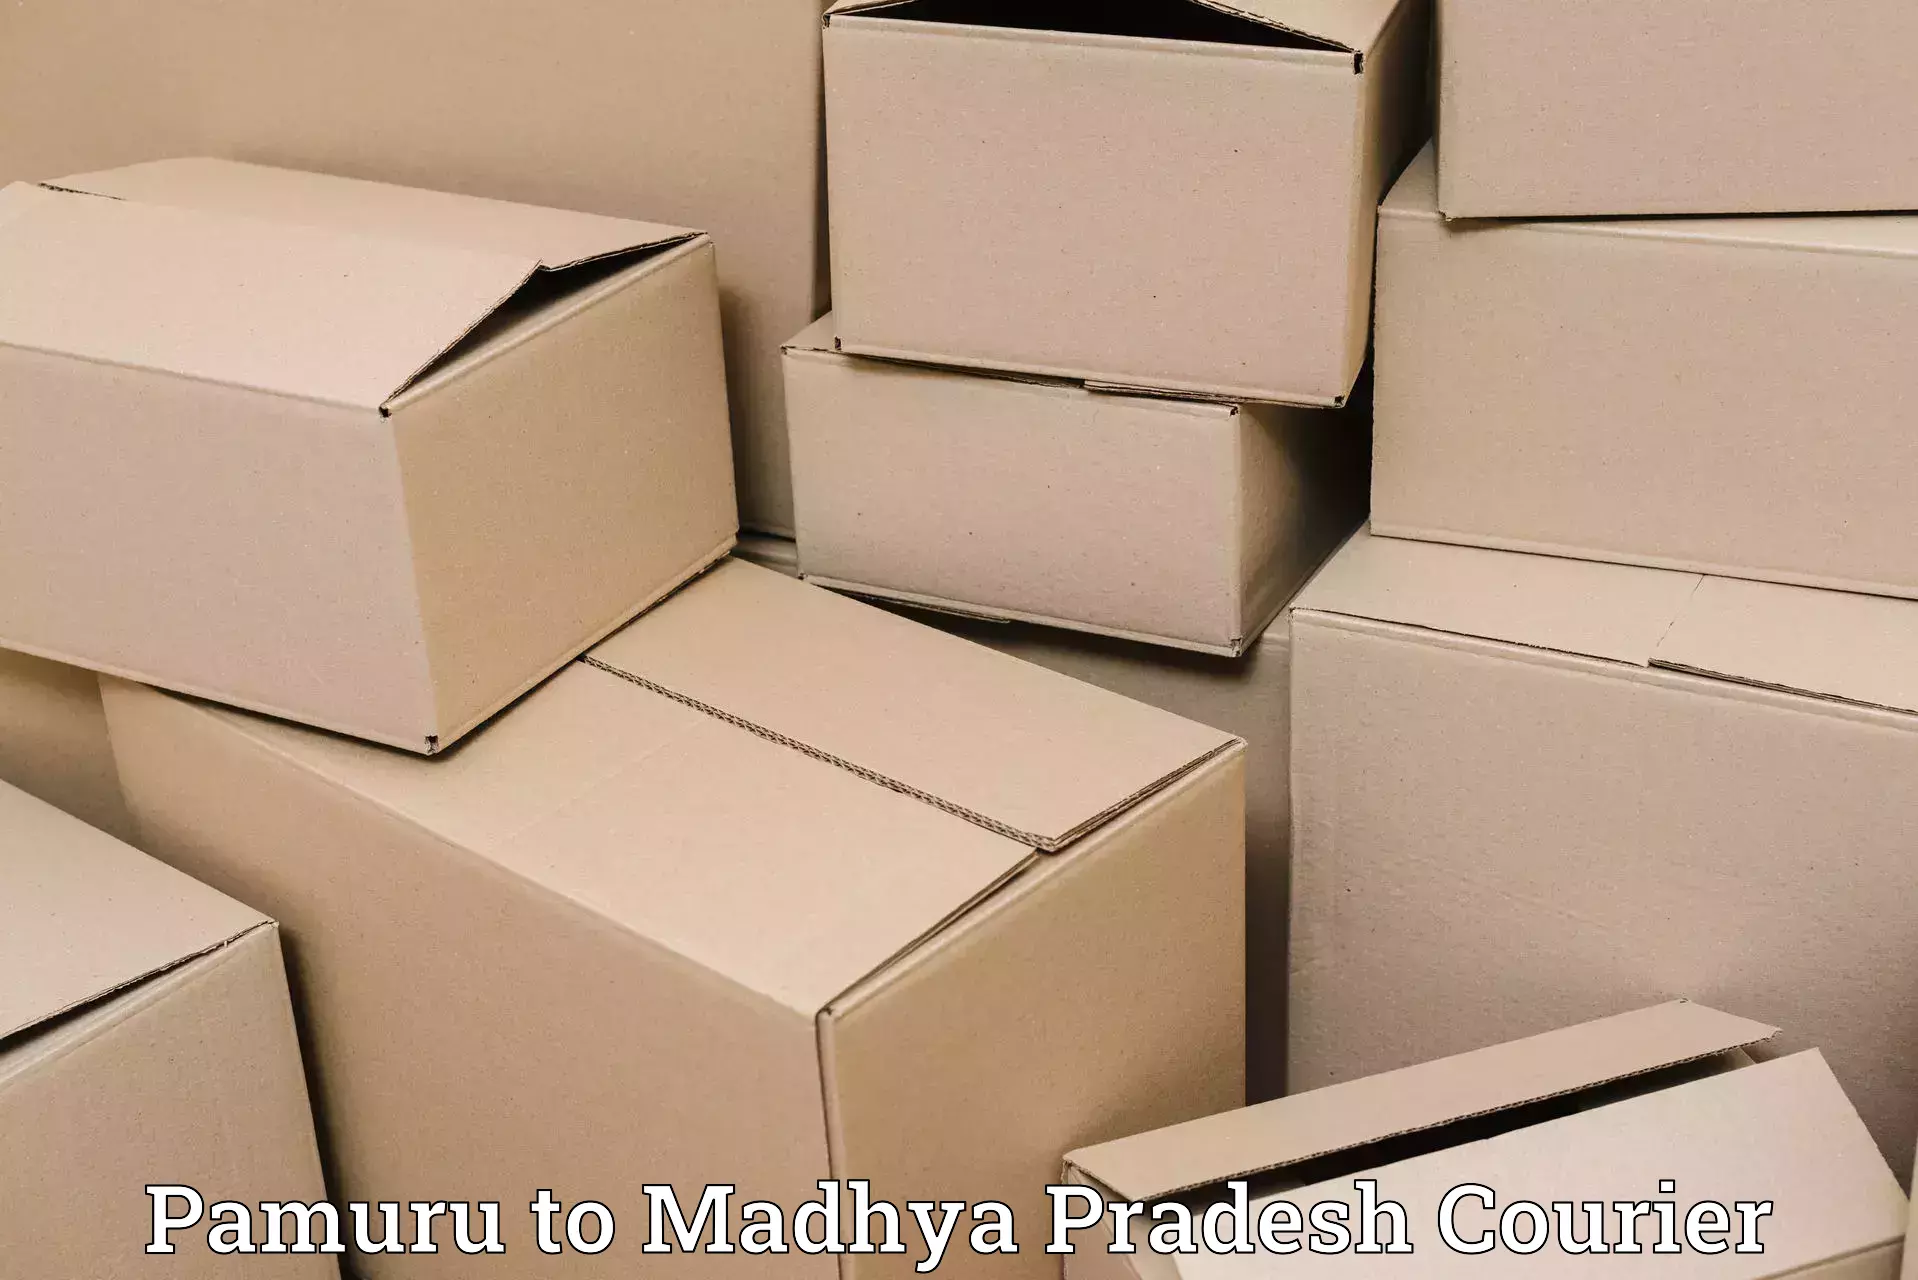 International courier networks Pamuru to Madhya Pradesh